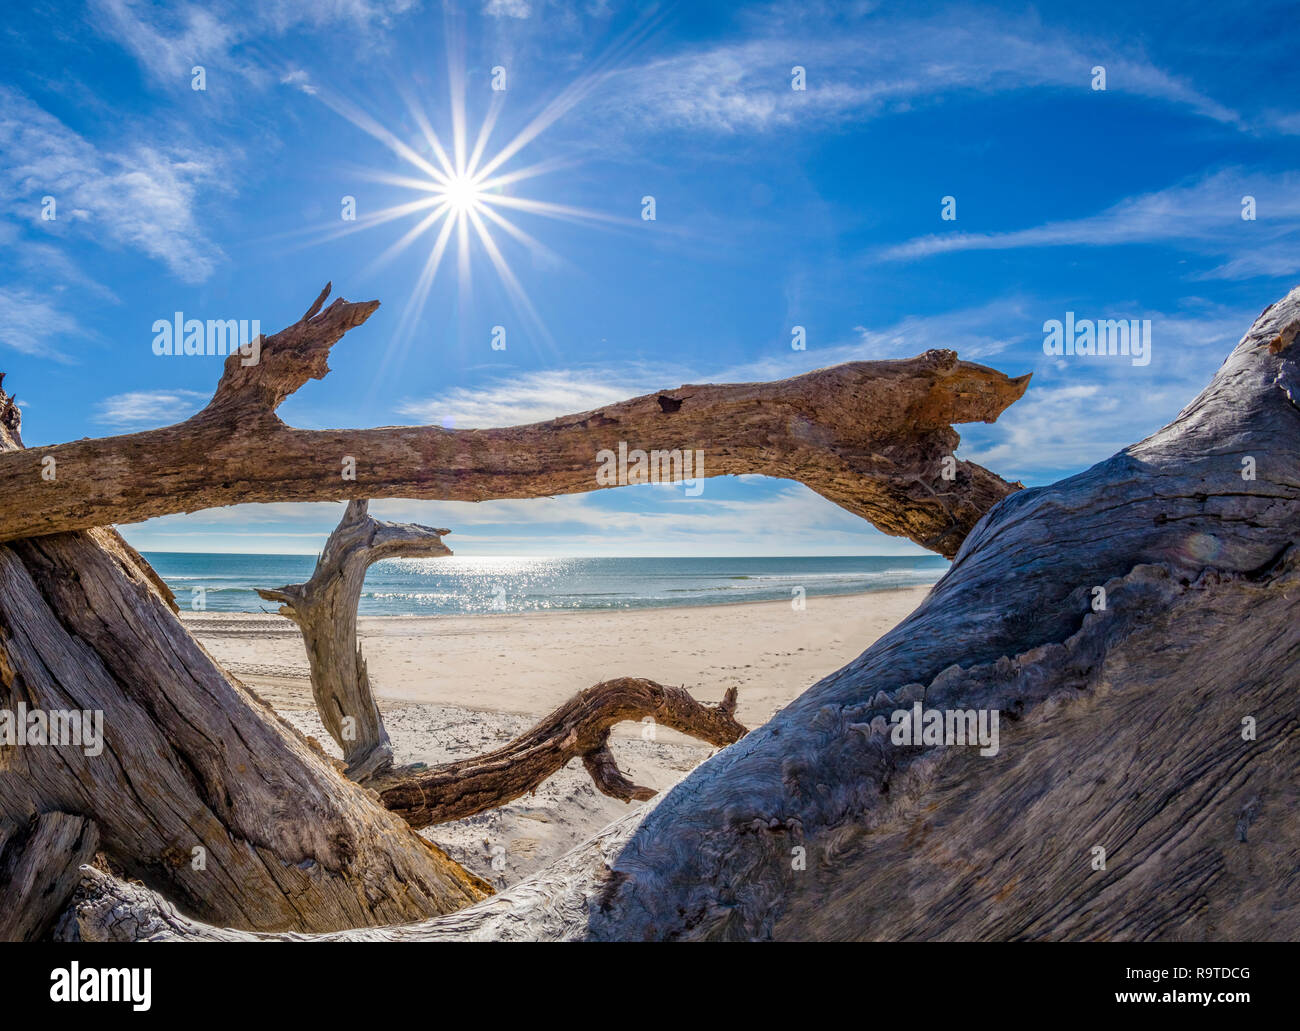 Treibholz am Golf von Mexiko Strand auf St. George Island im pfannenstiel oder vergessene Küste von Florida in den Vereinigten Staaten Stockfoto